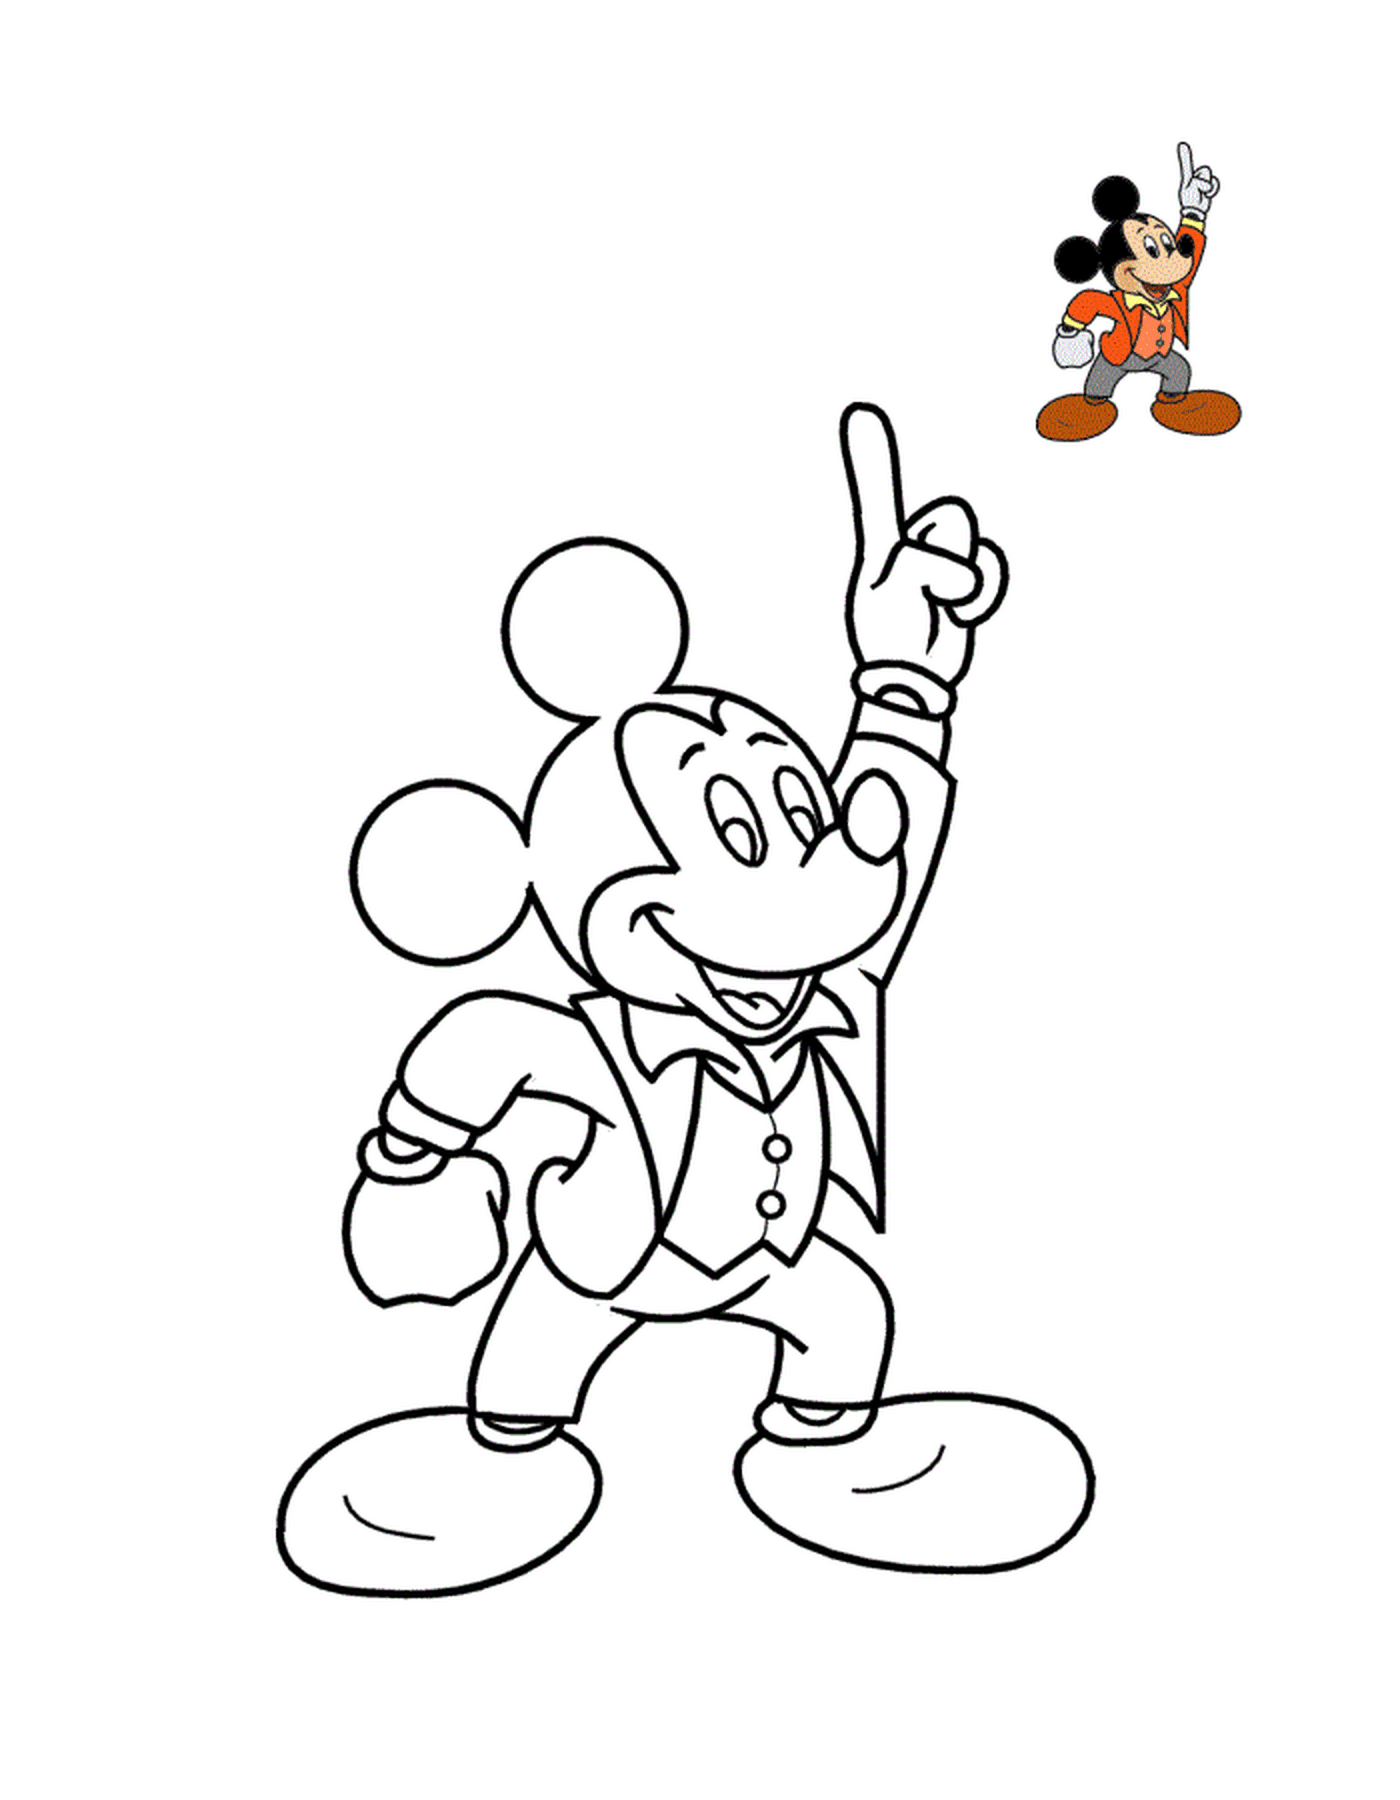  米老鼠,漫画剧的明星 